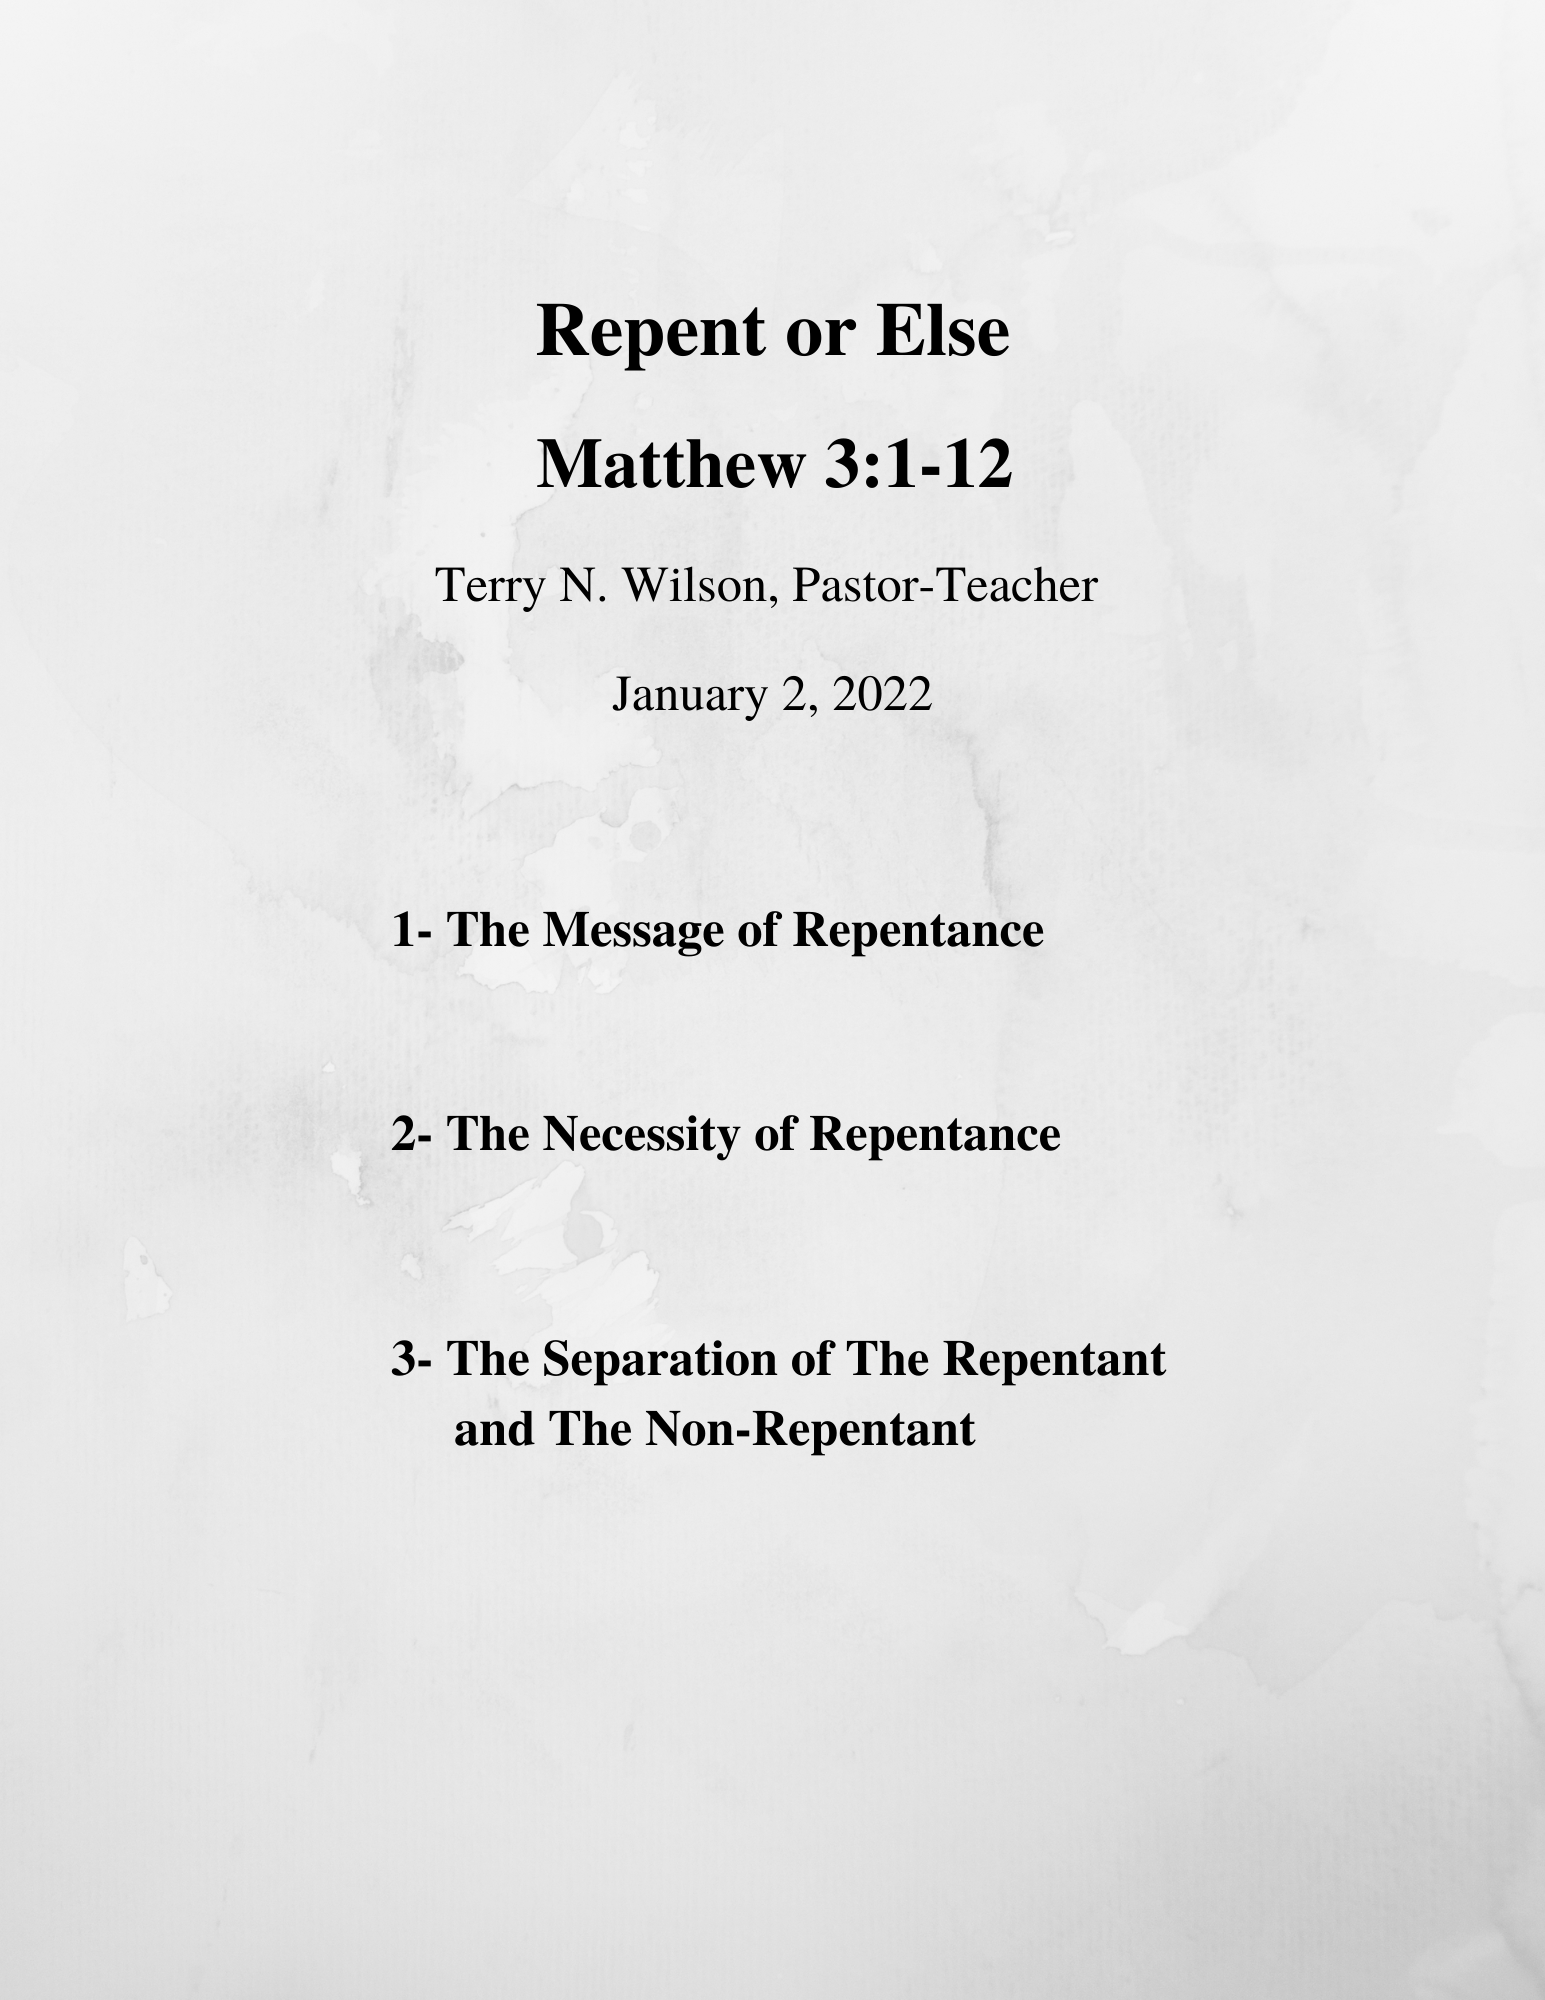 01.02.22 Sermon Notes